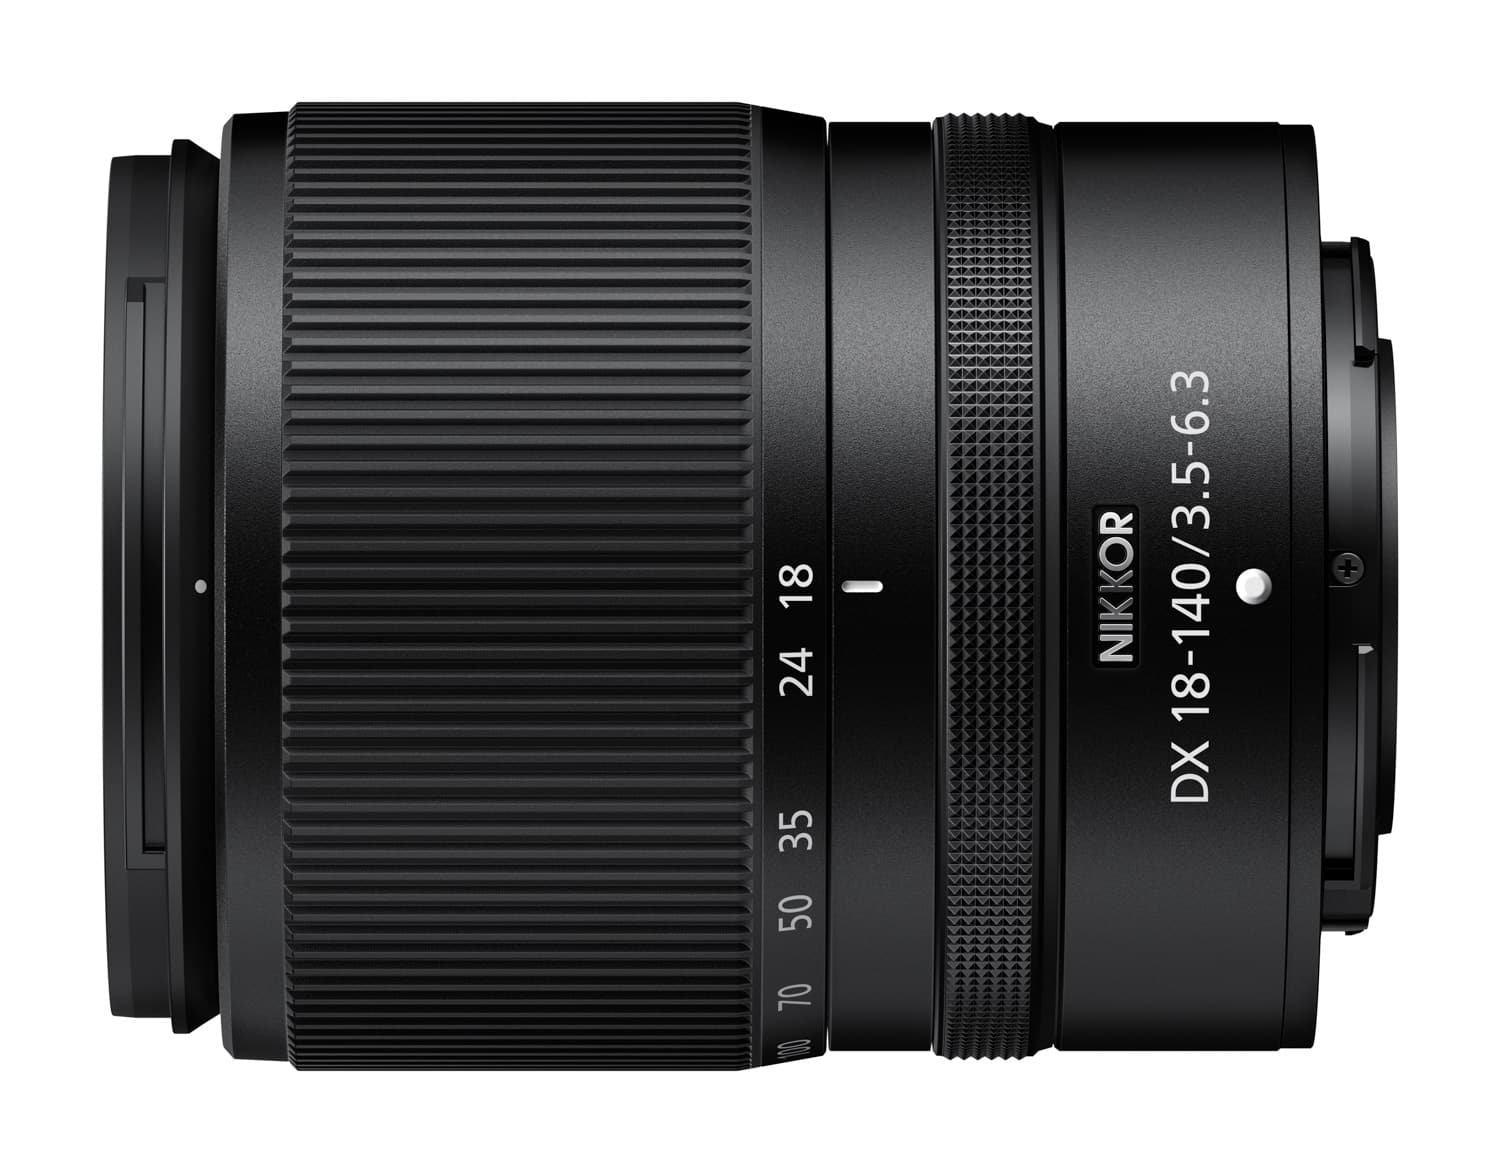 Nikon ra mắt 3 ống kính mới cho ngàm Z, NIKKOR Z DC 16-50mm F3.5-6.3 VR, NIKKOR Z 28mm F2.8 (SE) và NIKKOR Z DX 18-140mm F3.5-6.3 VR